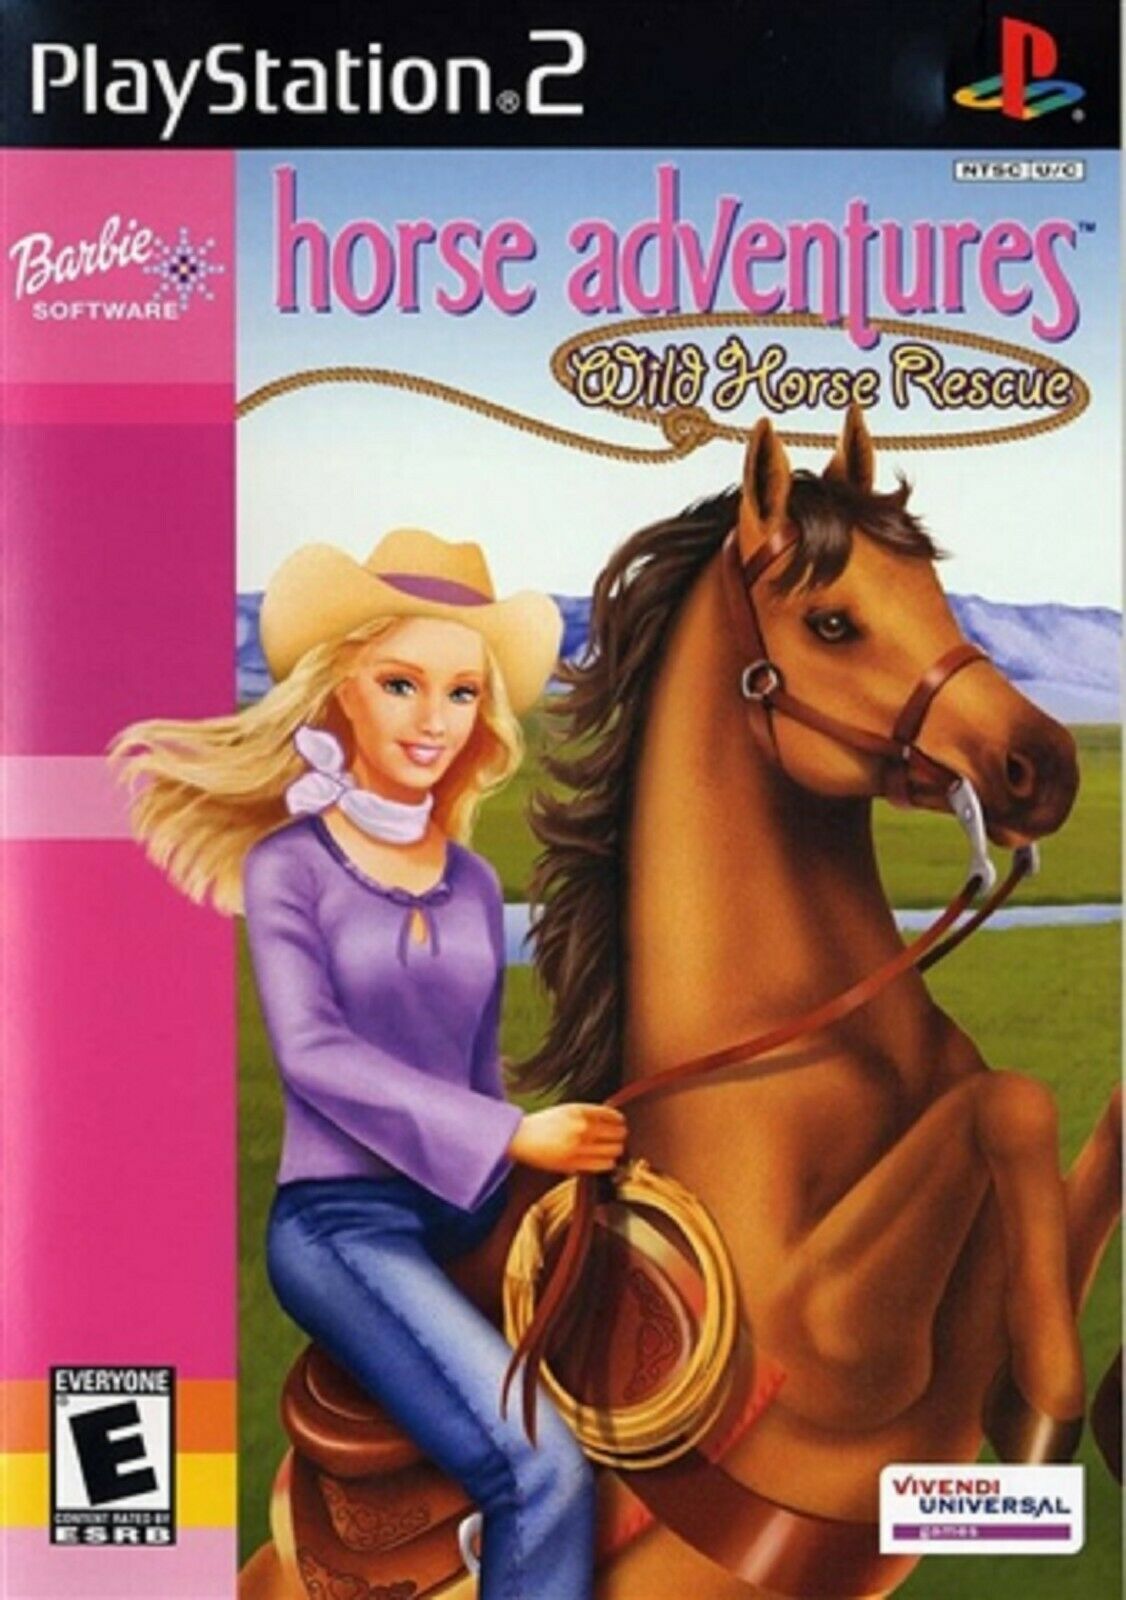 Gra PS2 Barbie Horse Adventure Wild Horse Rescue